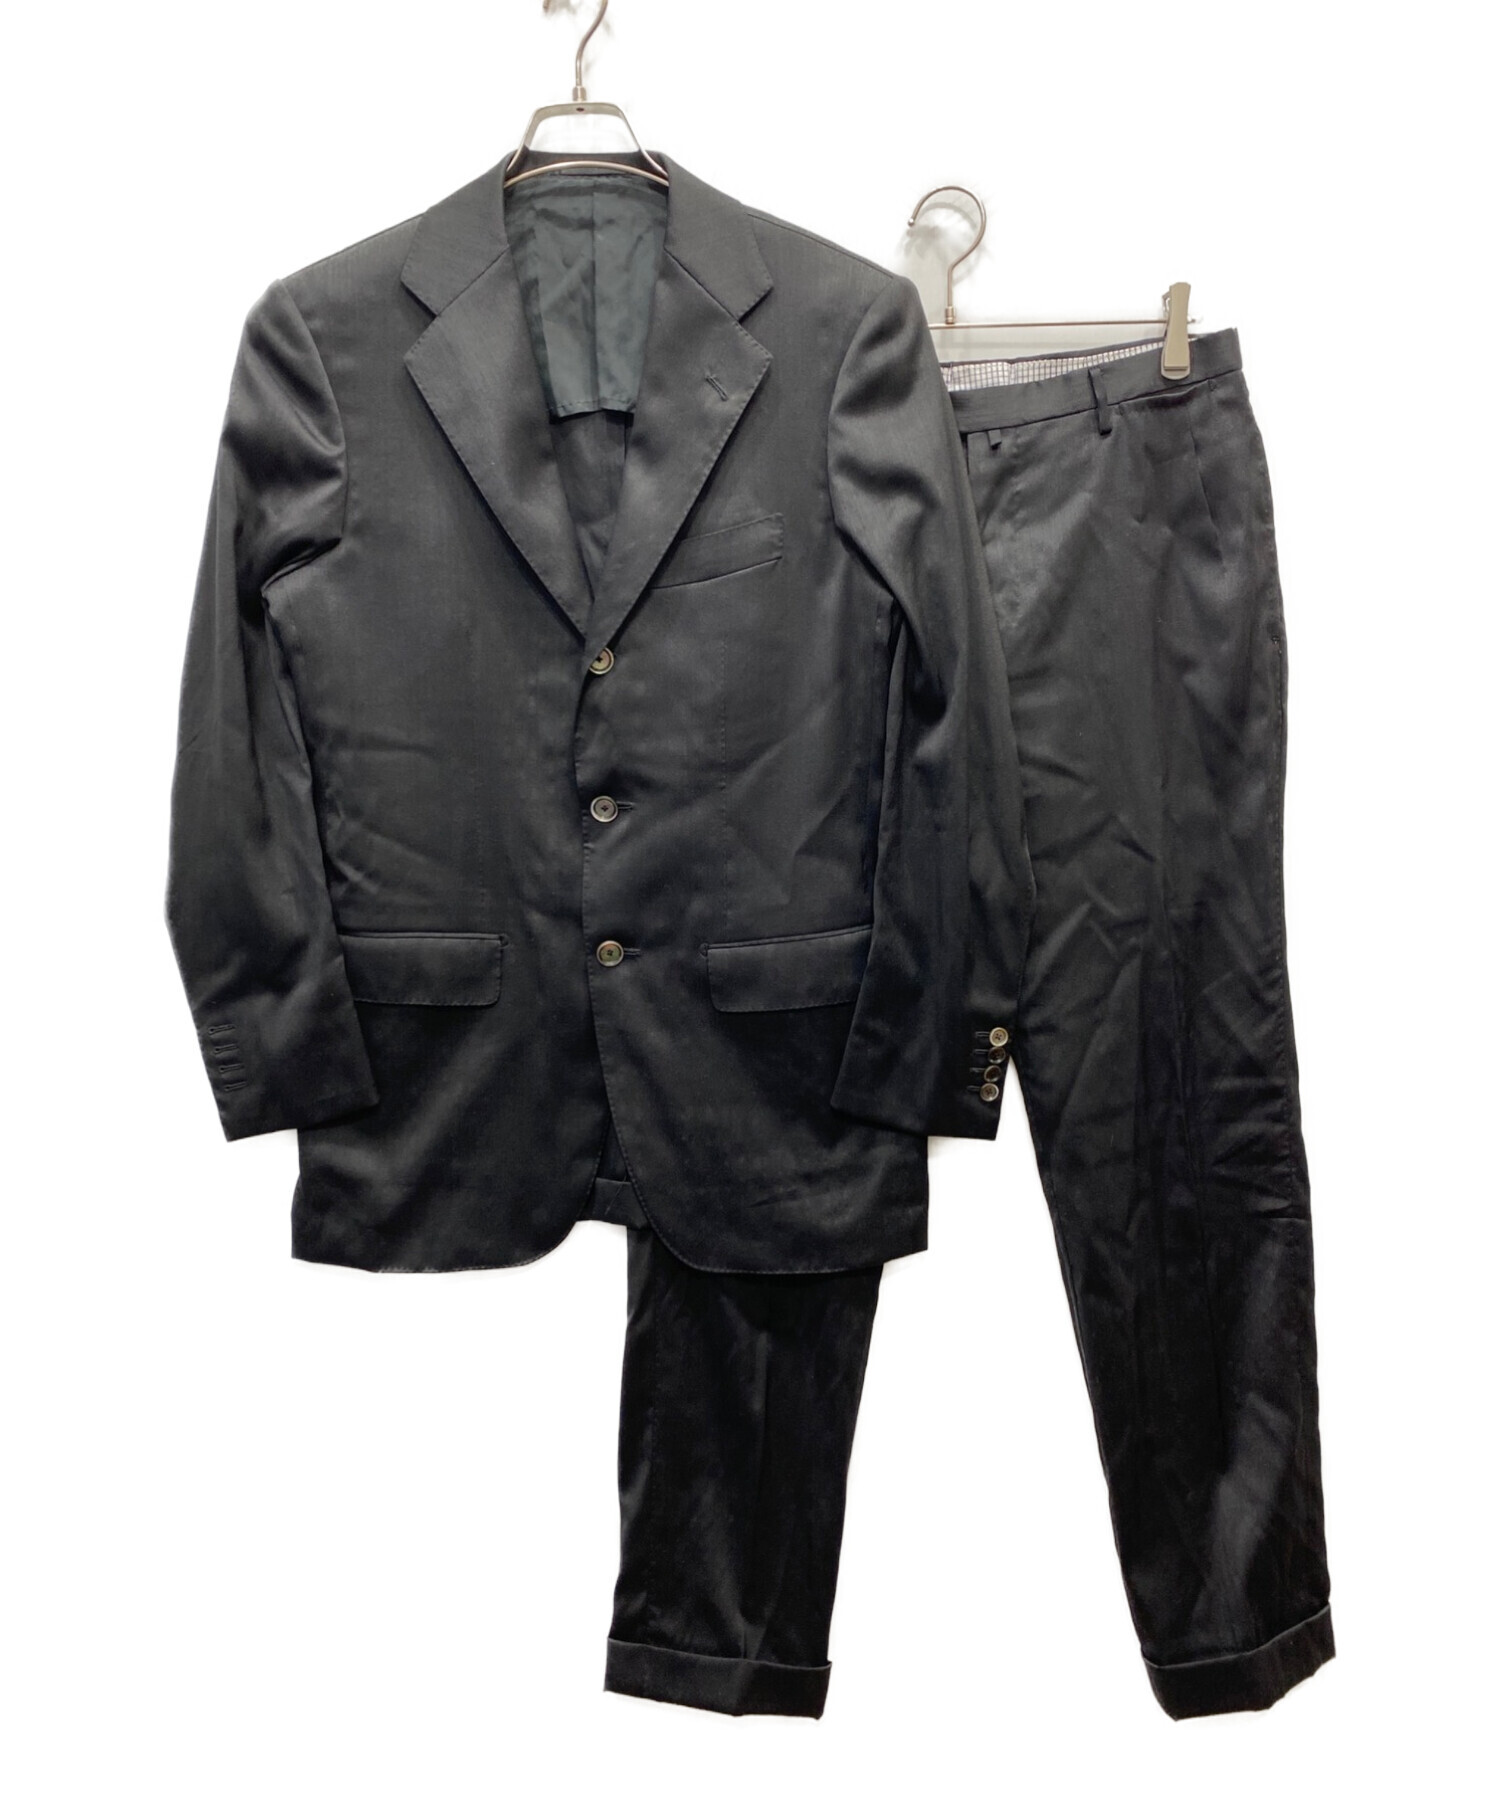 トゥモローランド pilgrim セットアップ 予約販売品 - スーツ